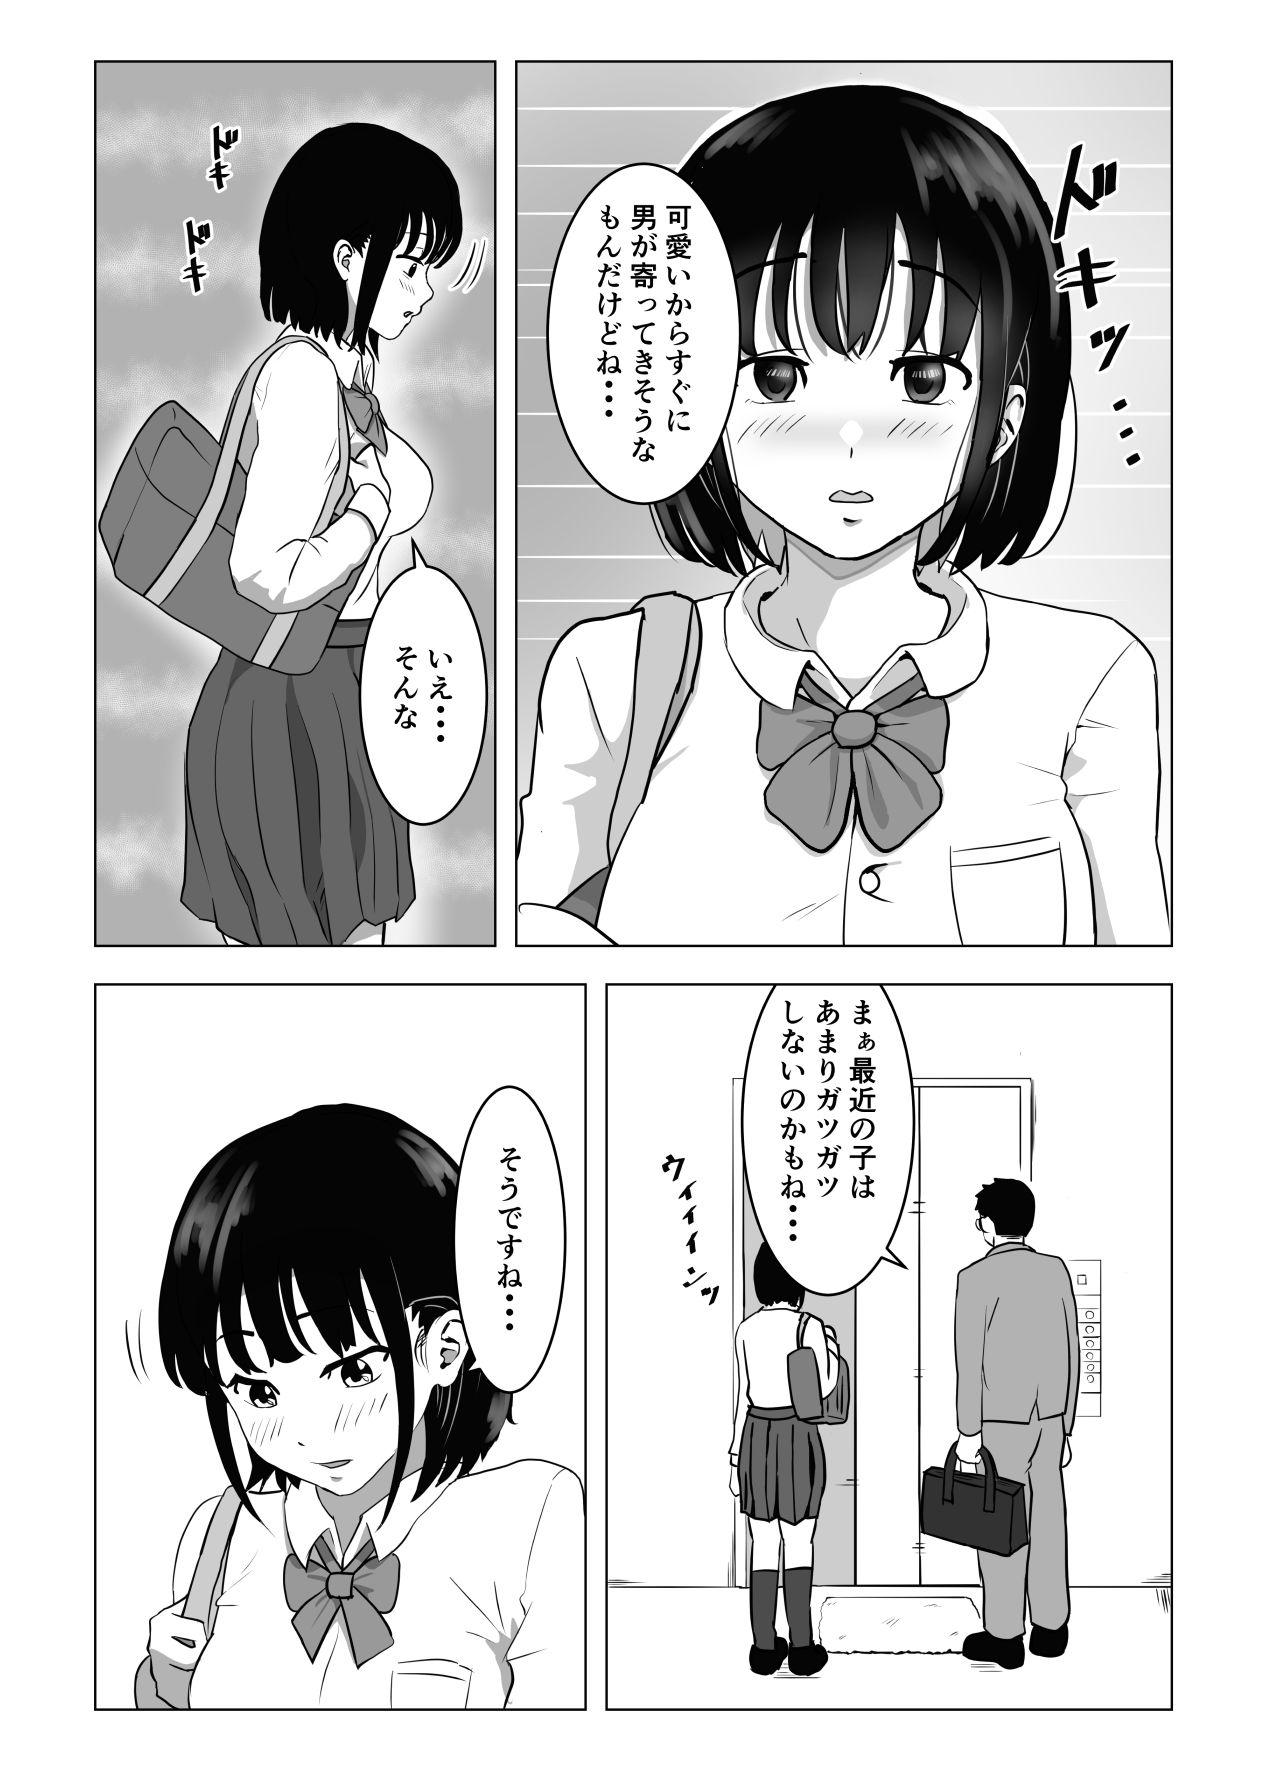 Cream Oji kagi ― kyonyu ● ● wa otonari no ojisan to etchishitai ― - Original Toys - Page 9